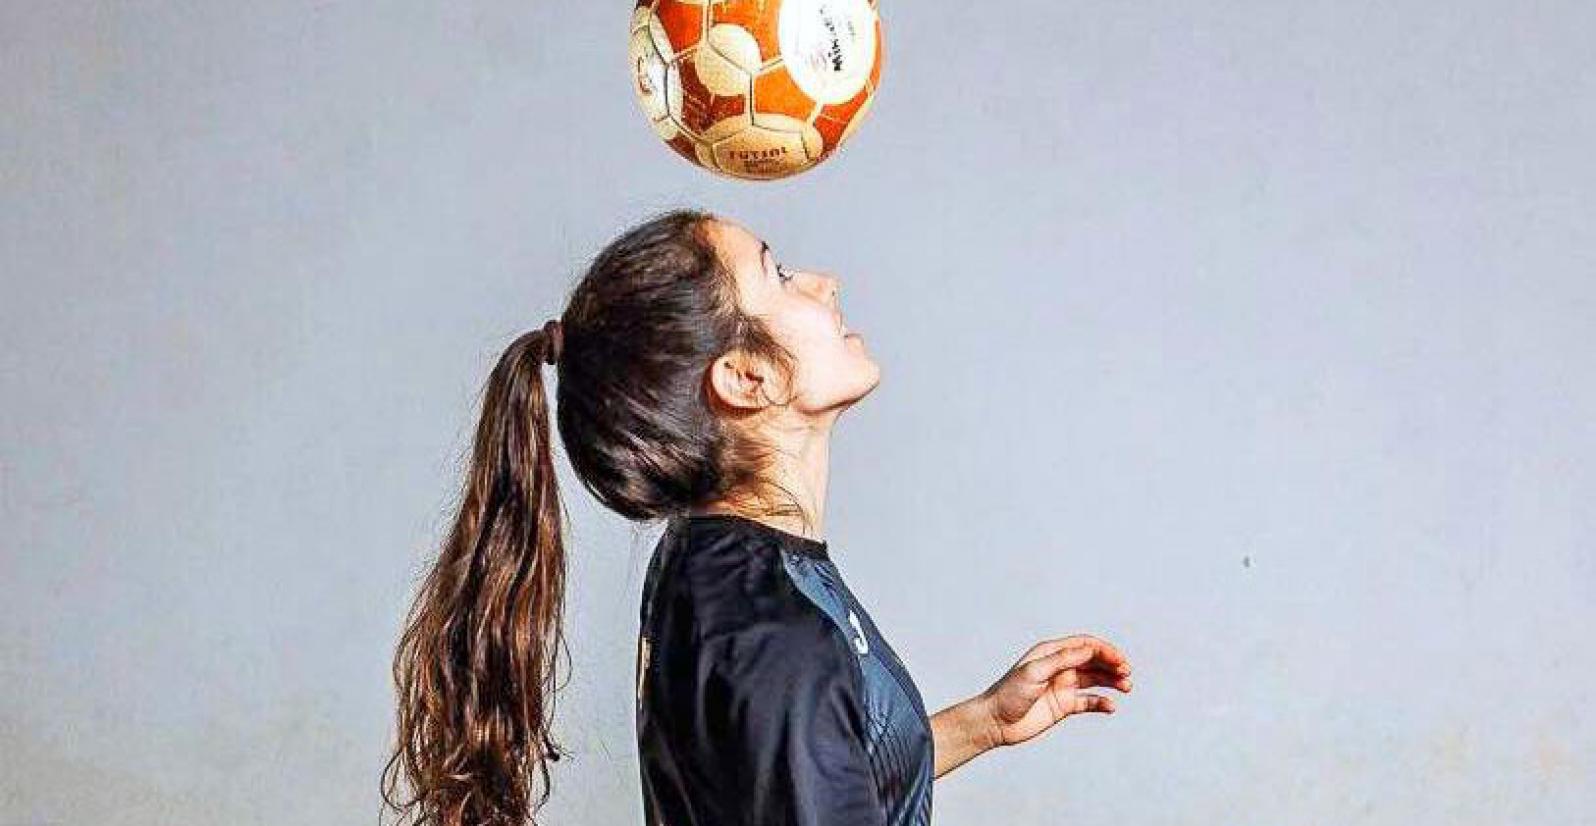 jogadora equipada a tocar com a cabeça numa bola de futsal